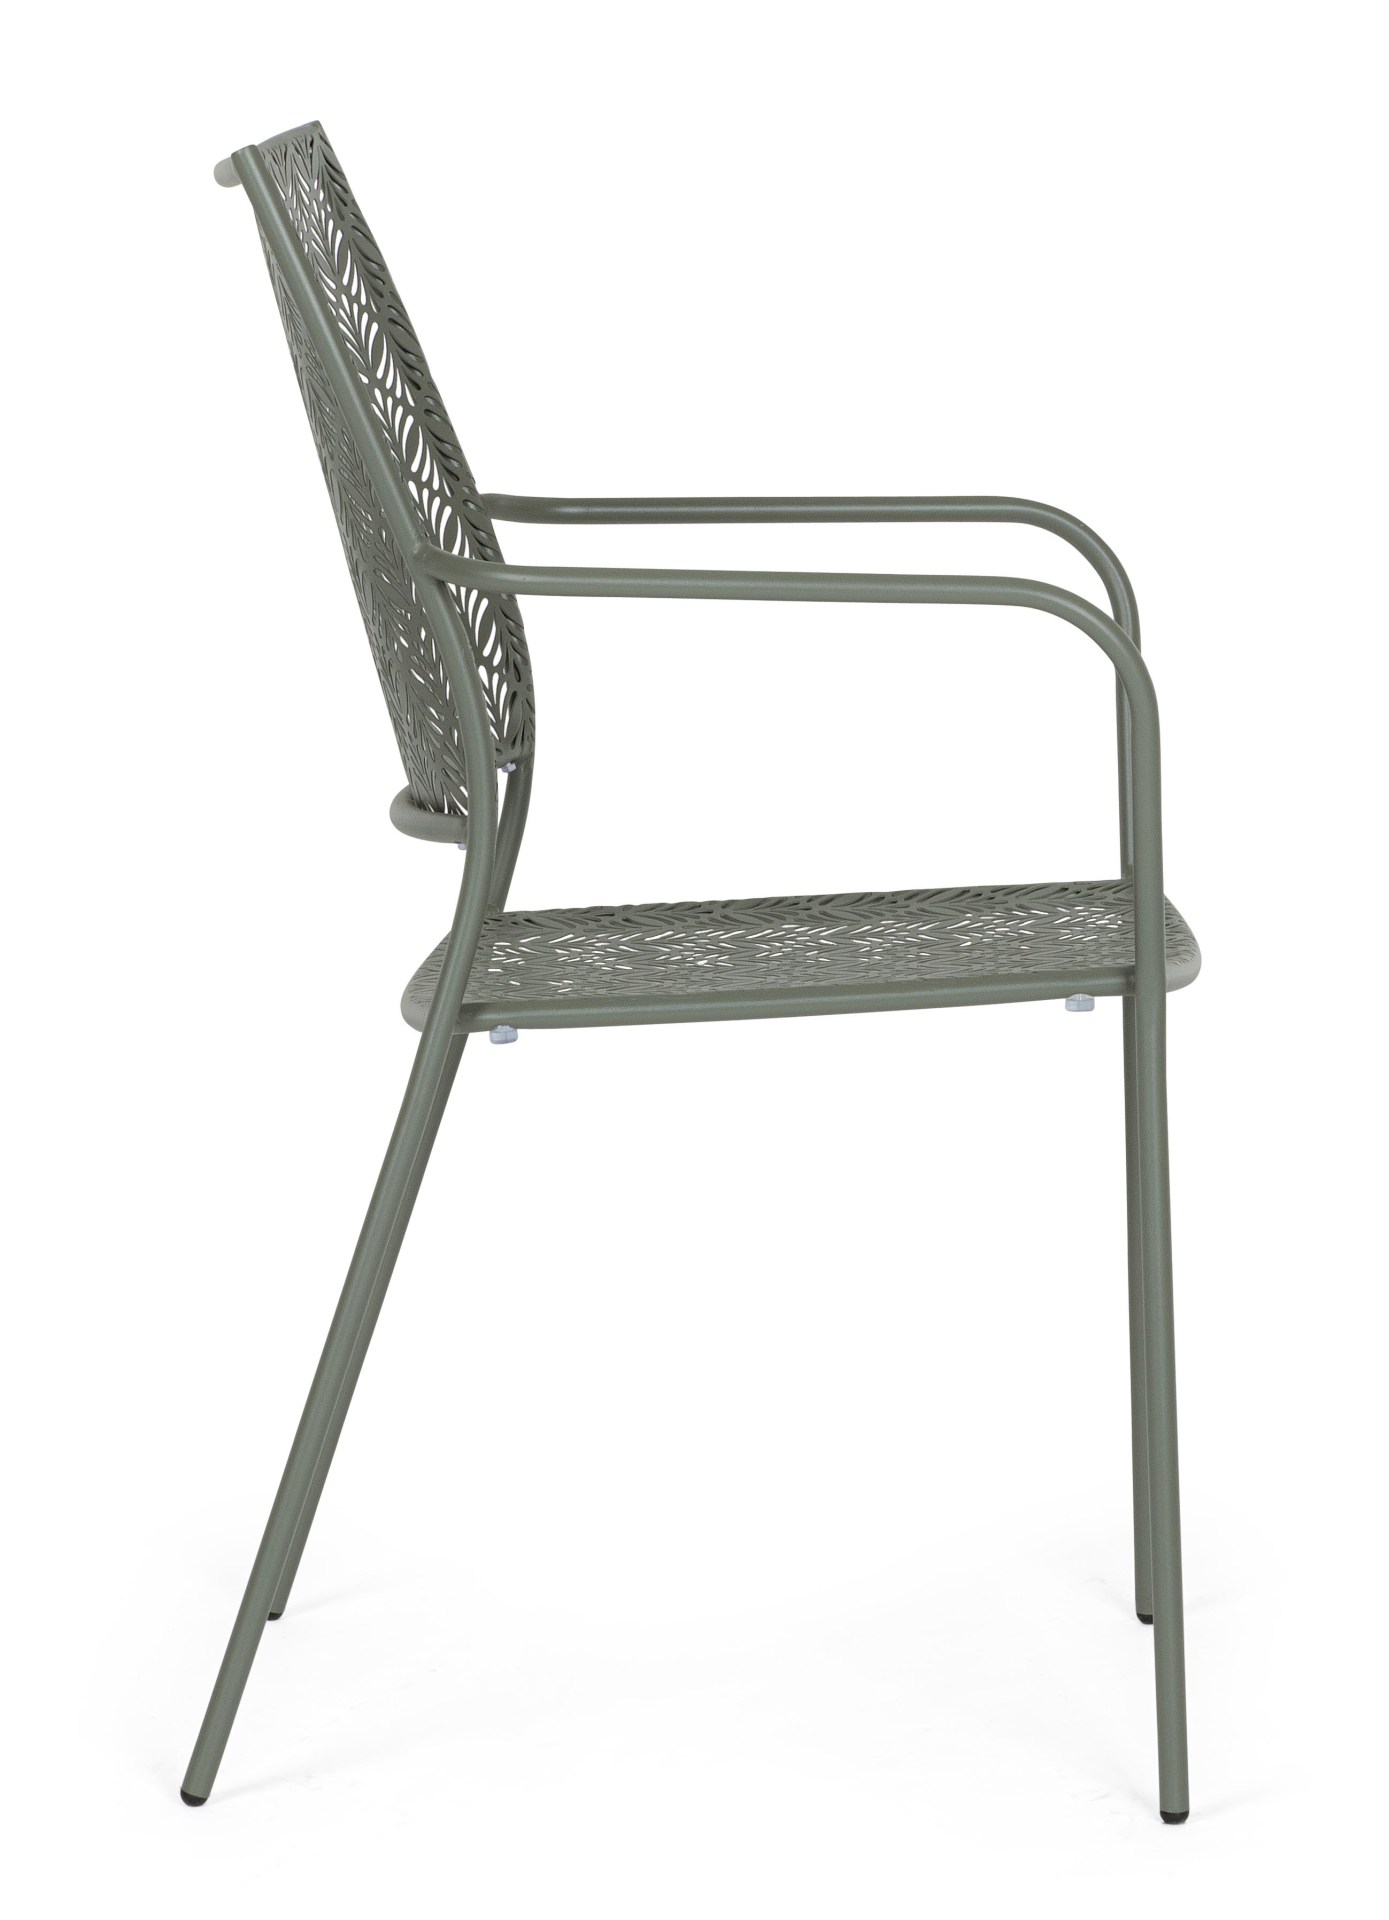 Der Gartenstuhl Lizette überzeugt mit seinem klassischen Design. Gefertigt wurde er aus Aluminium, welches einen grünen Farbton besitzen. Das Gestell ist aus Aluminium und hat eine grüne Farbe. Der Stuhl verfügt über eine Sitzhöhe von 45 cm und ist für de